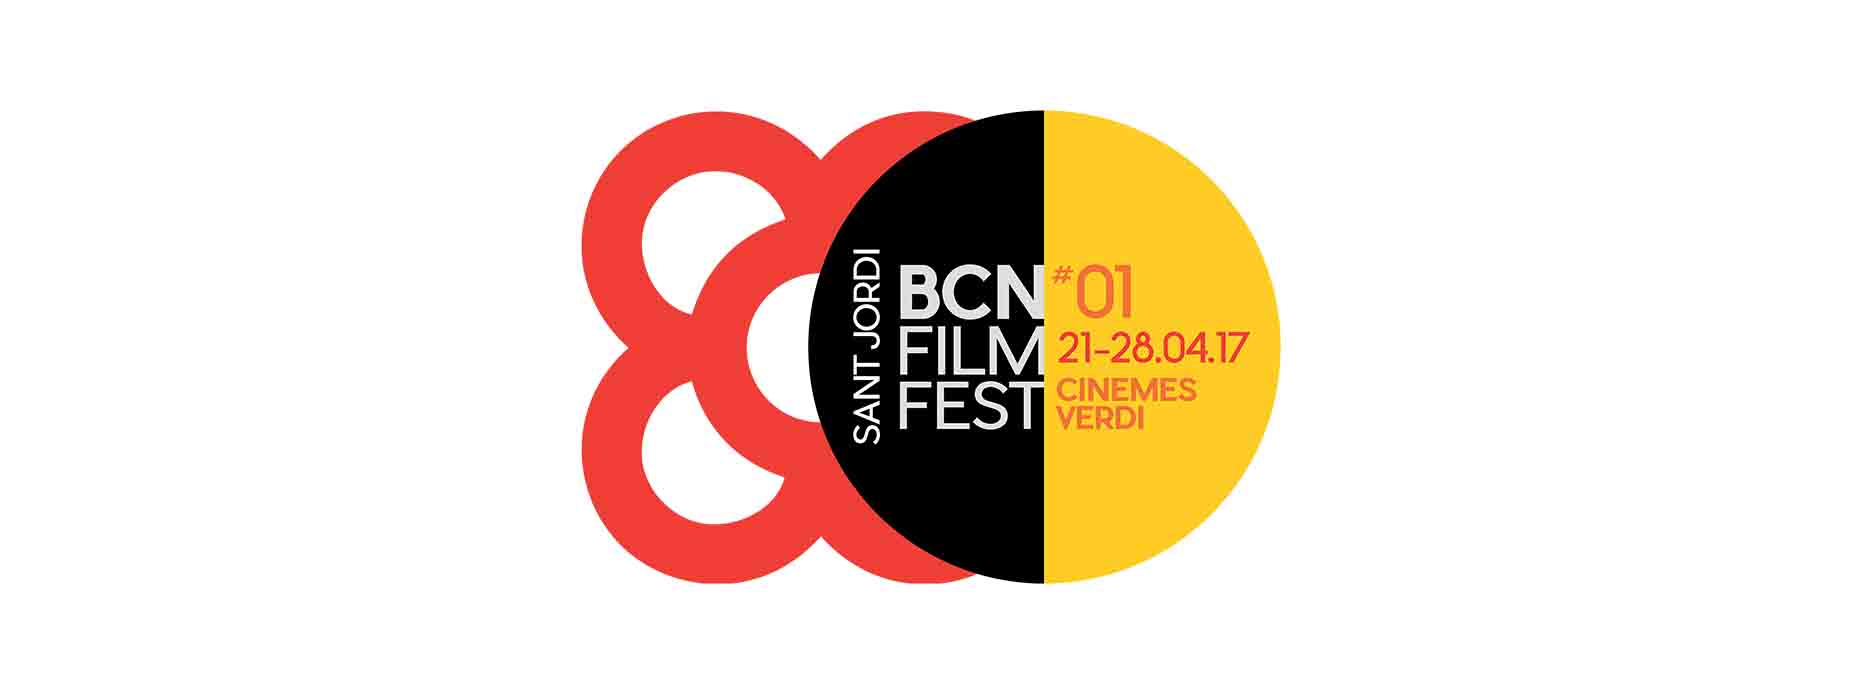 Primeras novedades sobre el BCN Film Fest